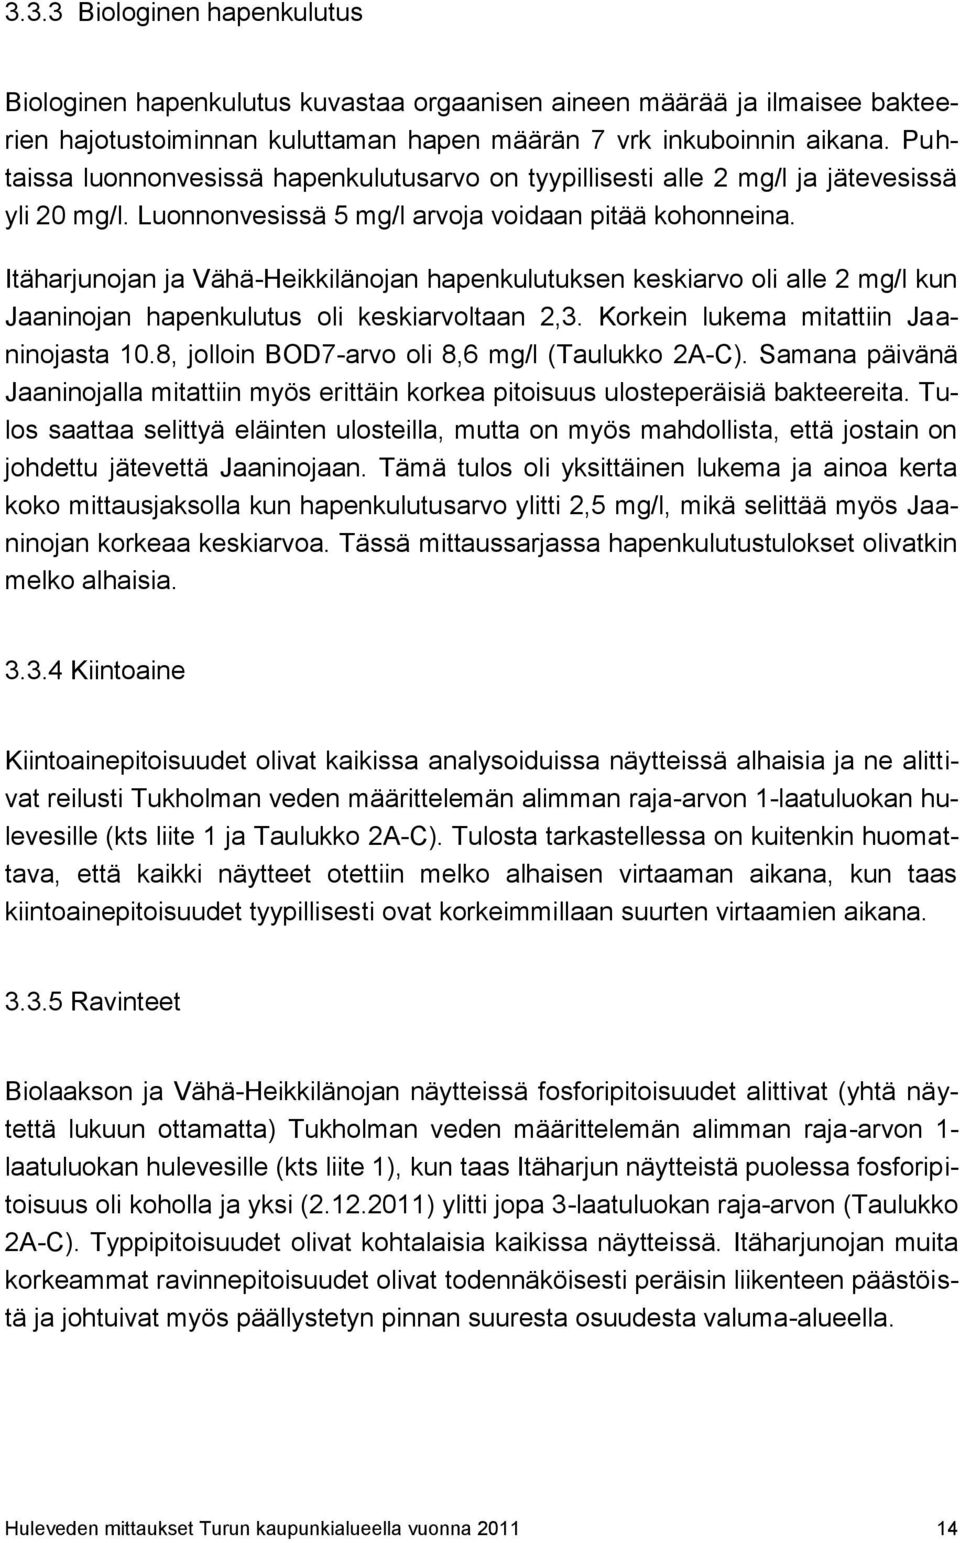 Itäharjunojan ja Vähä-Heikkilänojan hapenkulutuksen keskiarvo oli alle 2 mg/l kun Jaaninojan hapenkulutus oli keskiarvoltaan 2,3. Korkein lukema mitattiin Jaaninojasta 10.